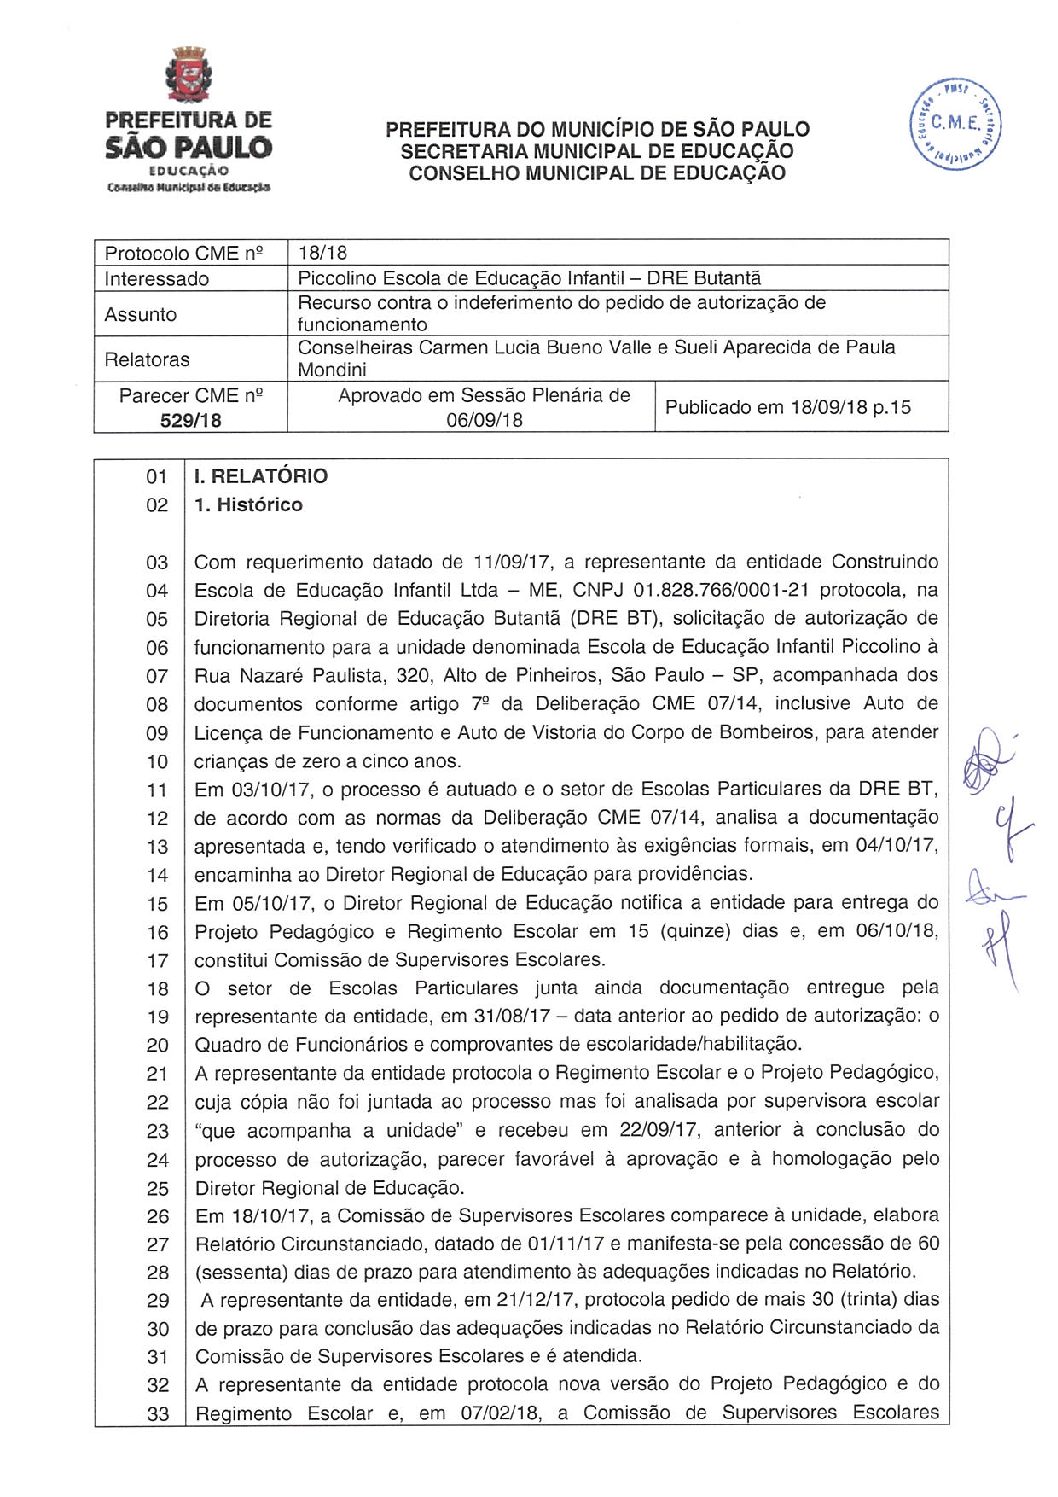 Parecer CME nº 529/2018 - Piccolino Escola de Educação Infantil (DRE Penha) - Recurso contra o indeferimento do pedido de autorização de funcionamento